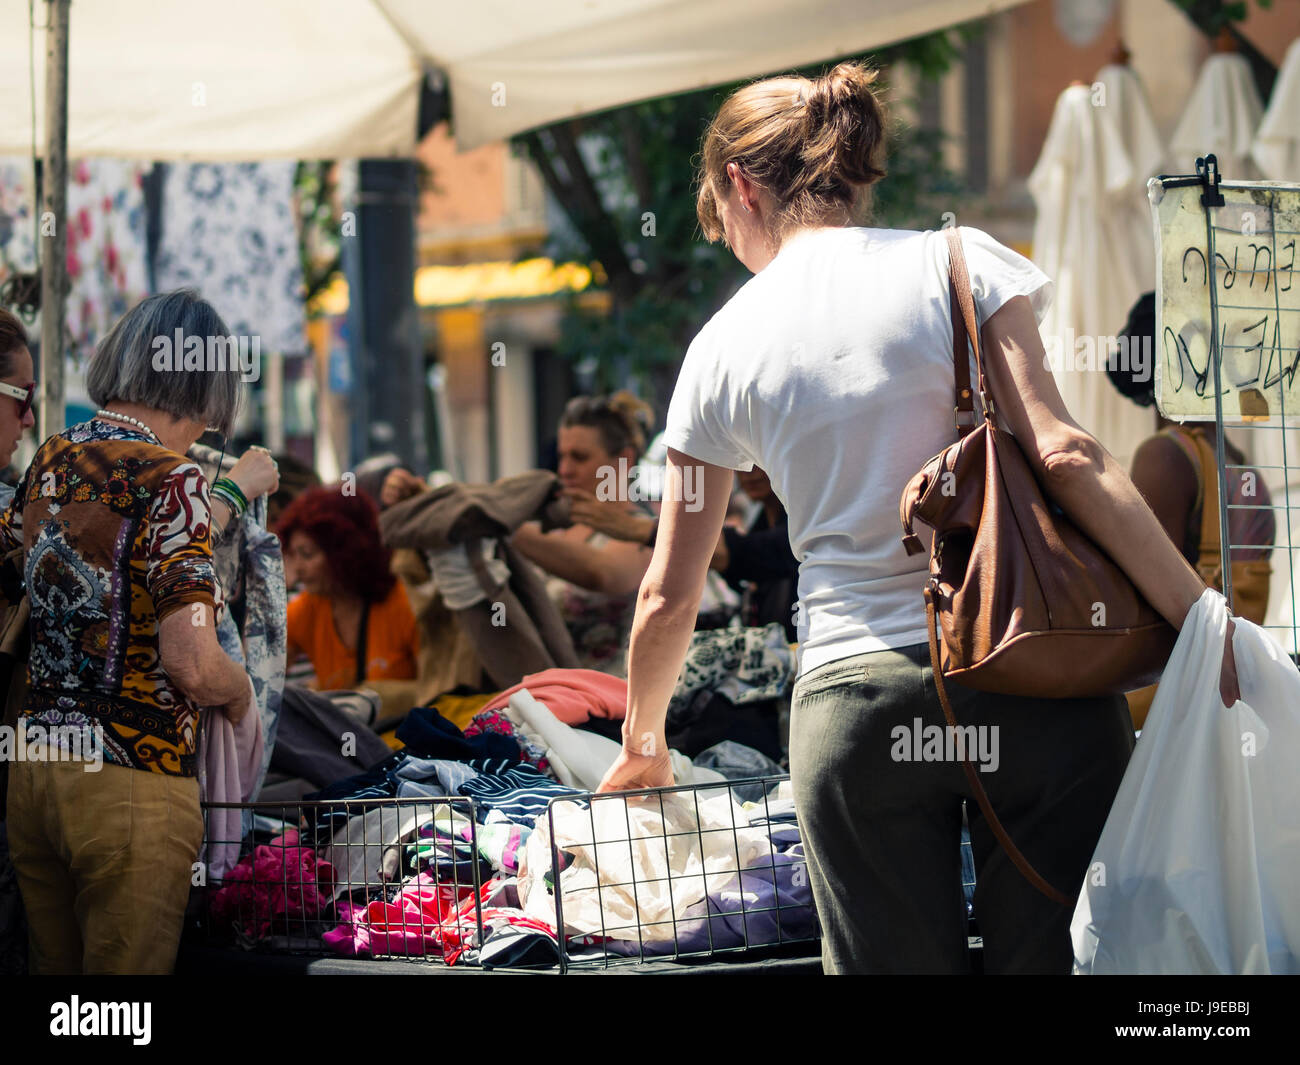 Personas comprando ropa imagen de archivo. Imagen de europeo - 232273633